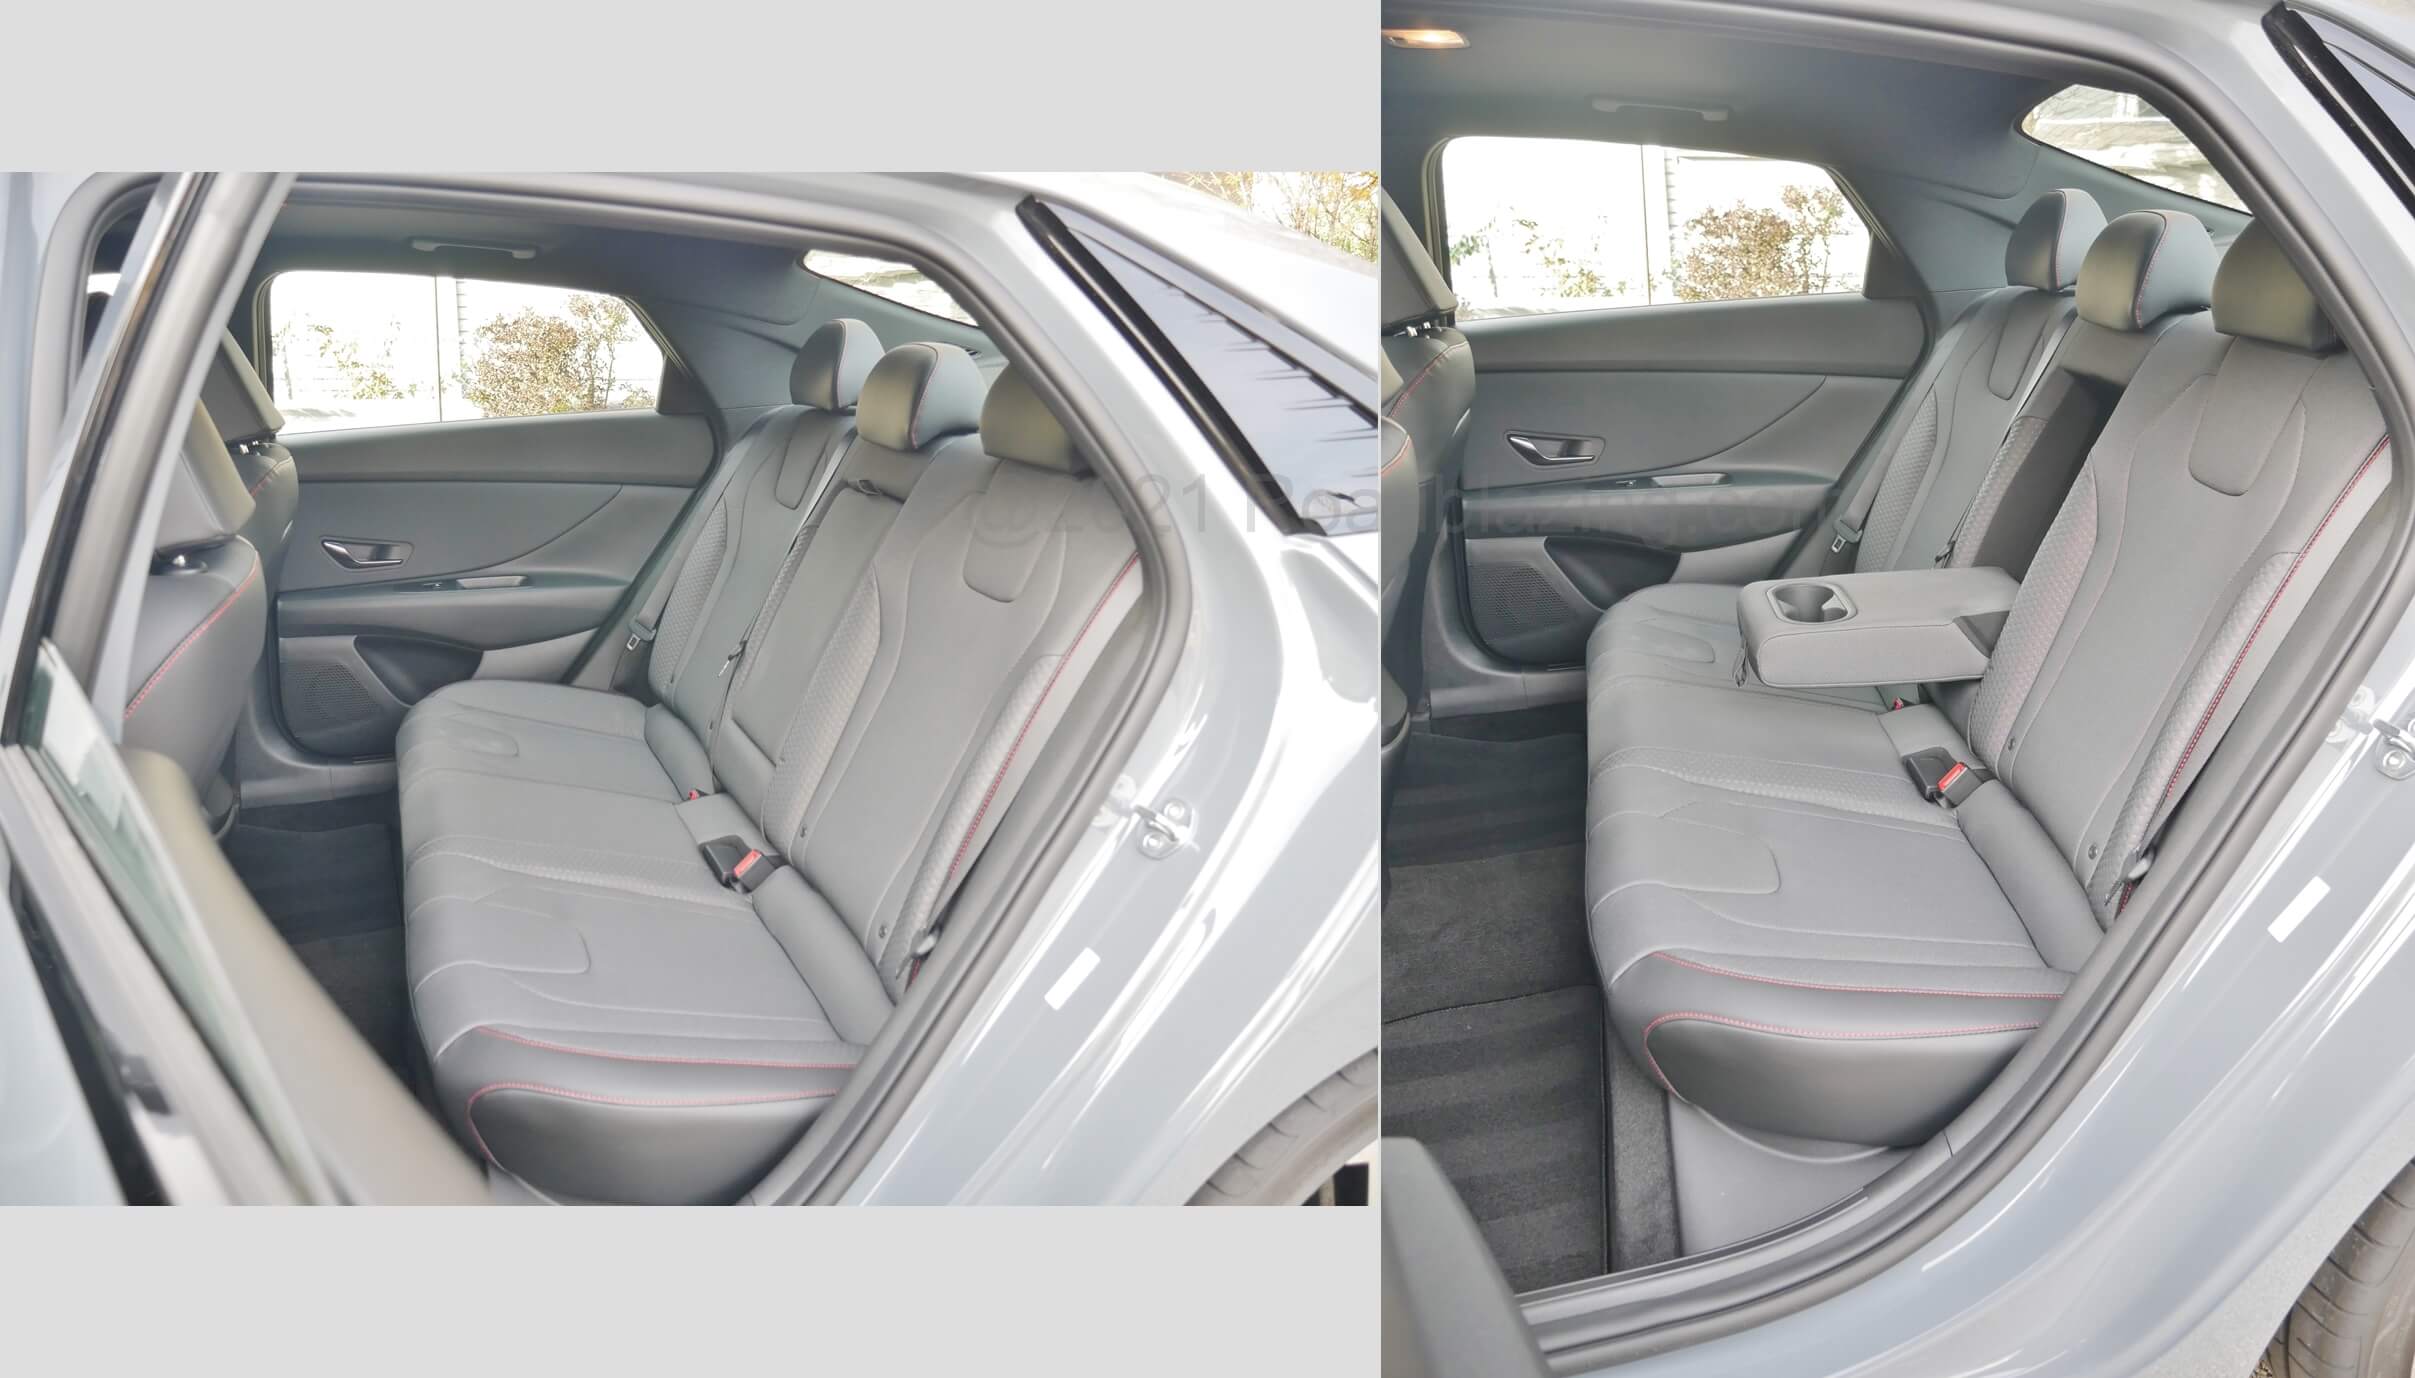 2021 Hyundai Elantra N-Line 1.6T: 38.0" inches roomy Row 2 legroom & center armrest